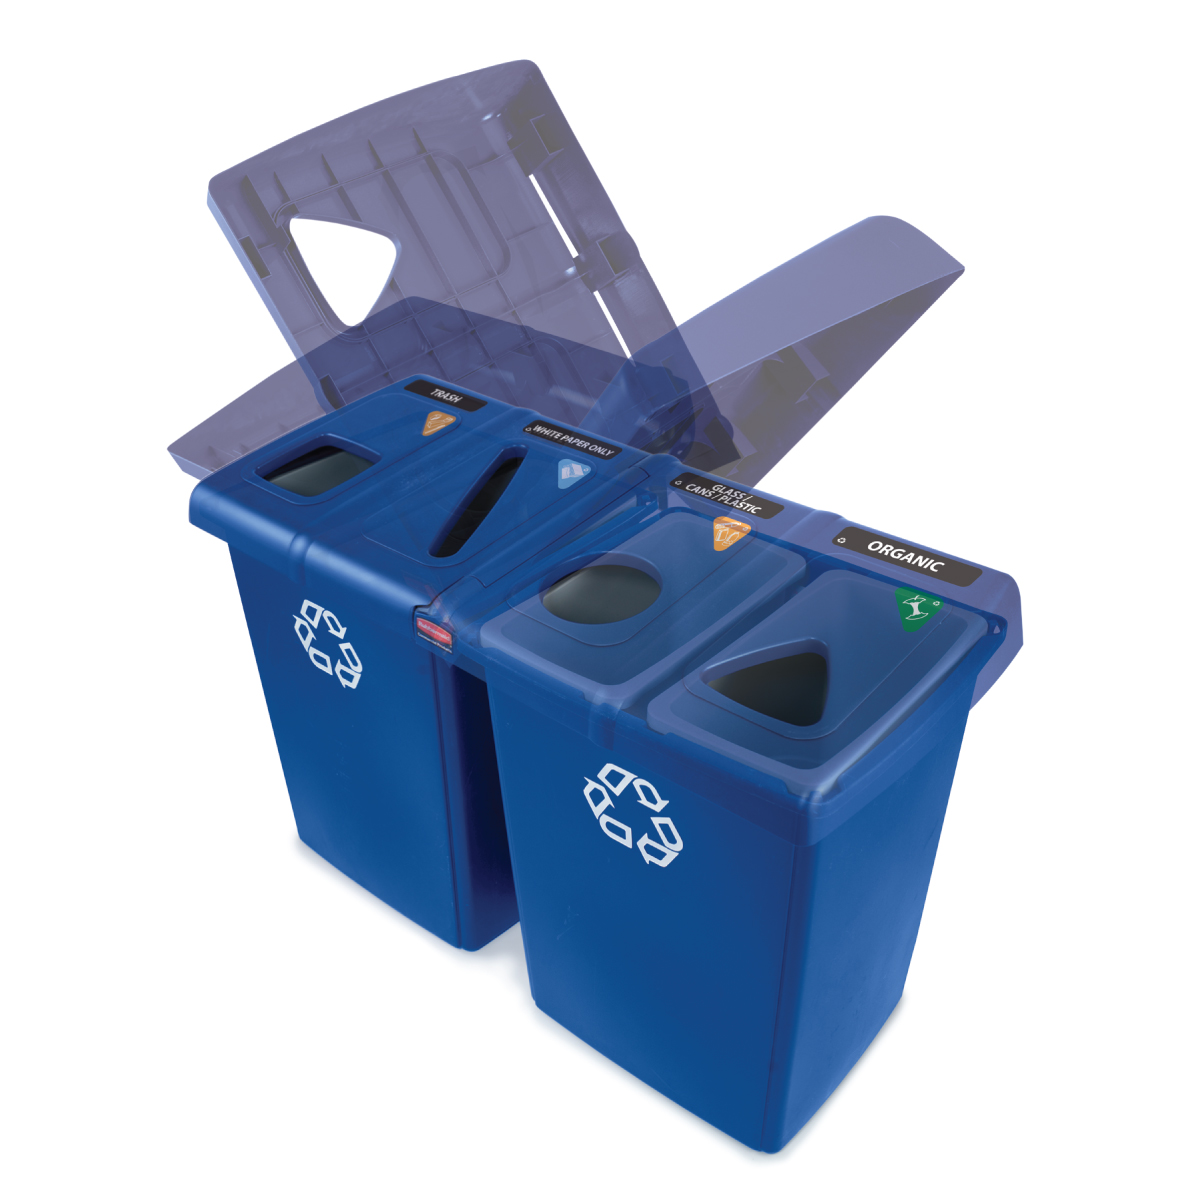 ถังขยะรีไซเคิล แบบ 4 ช่อง สีน้ำเงิน Glutton® Recycling Station